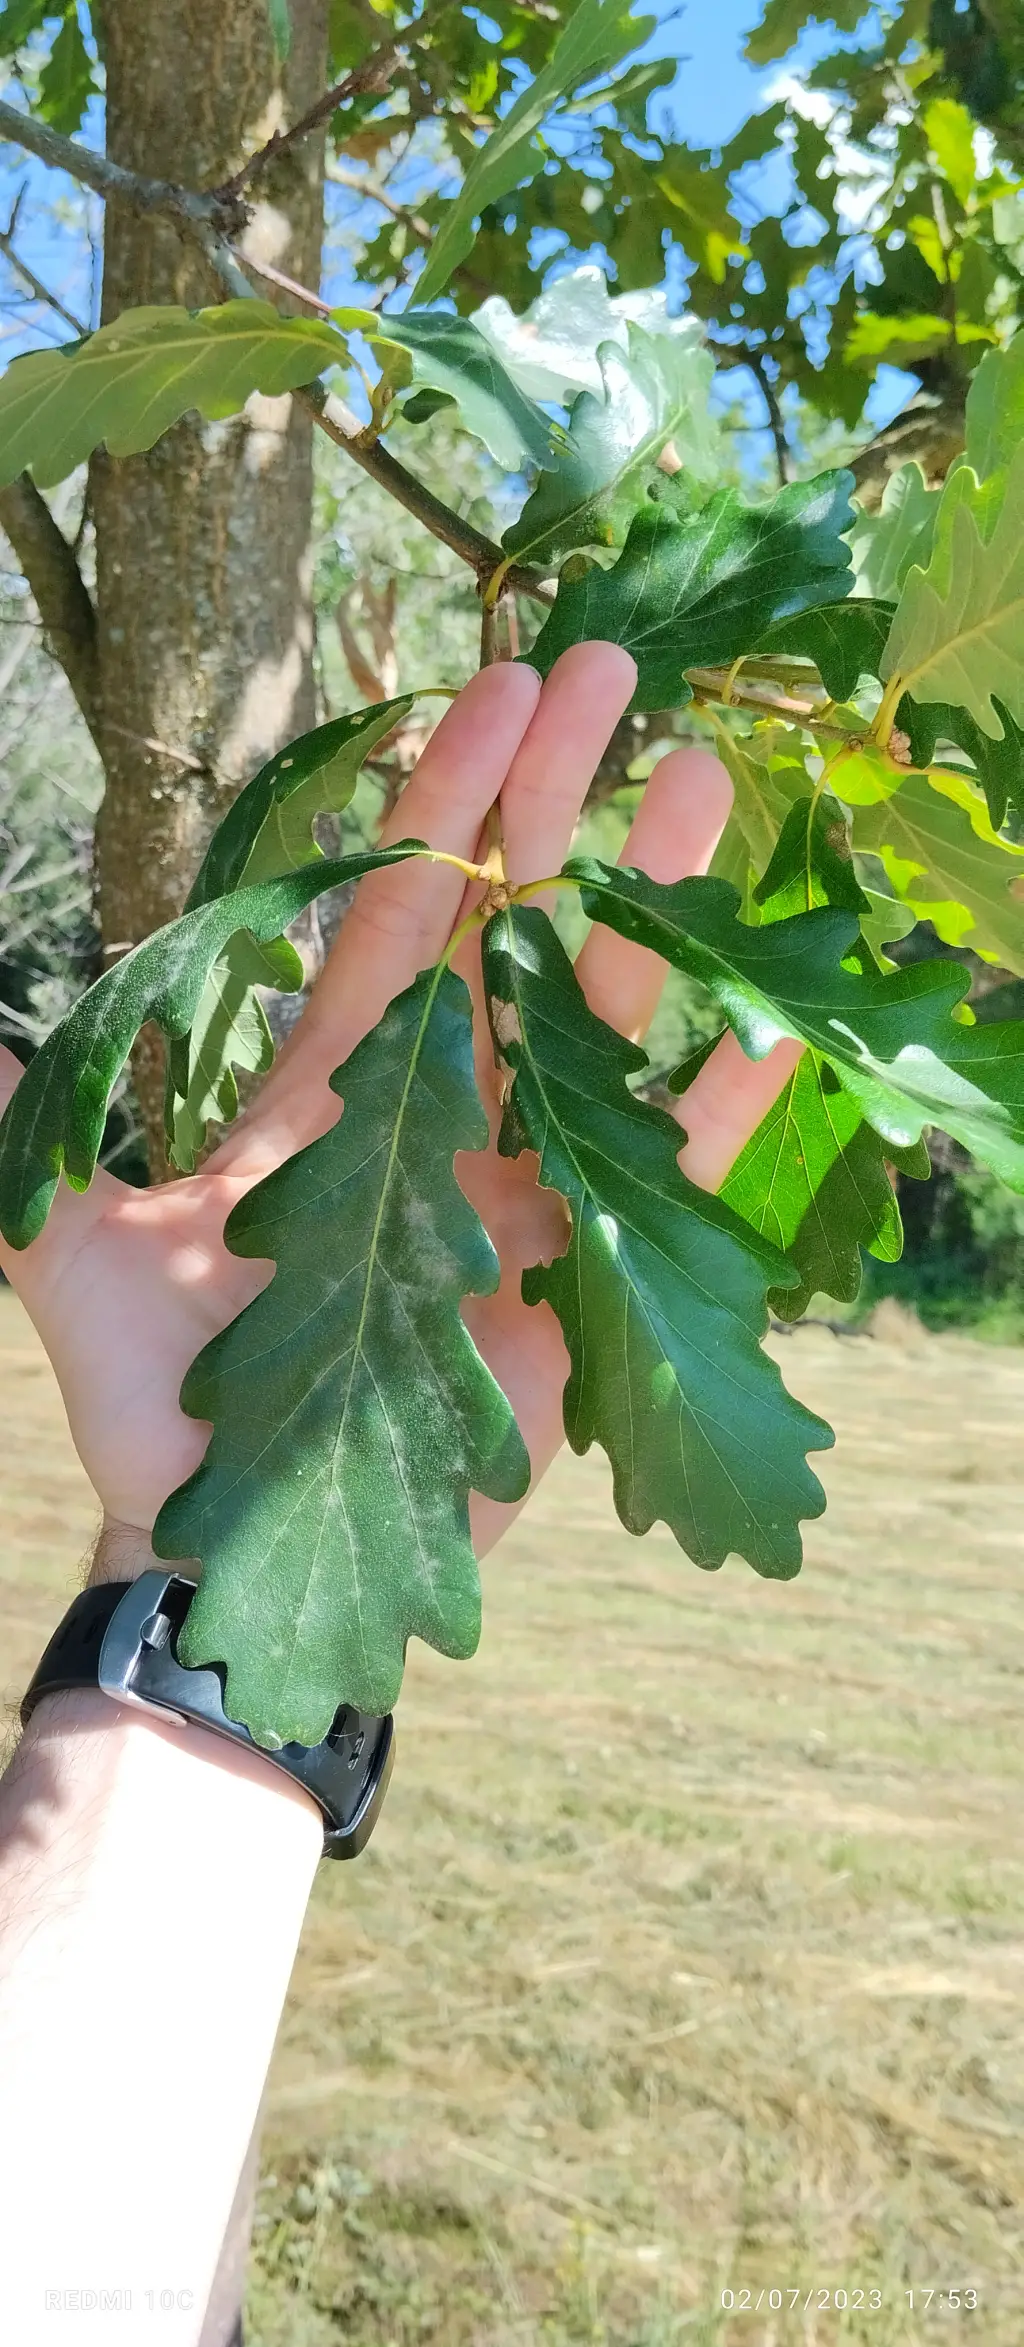 Quercus petraea (1 de 2)